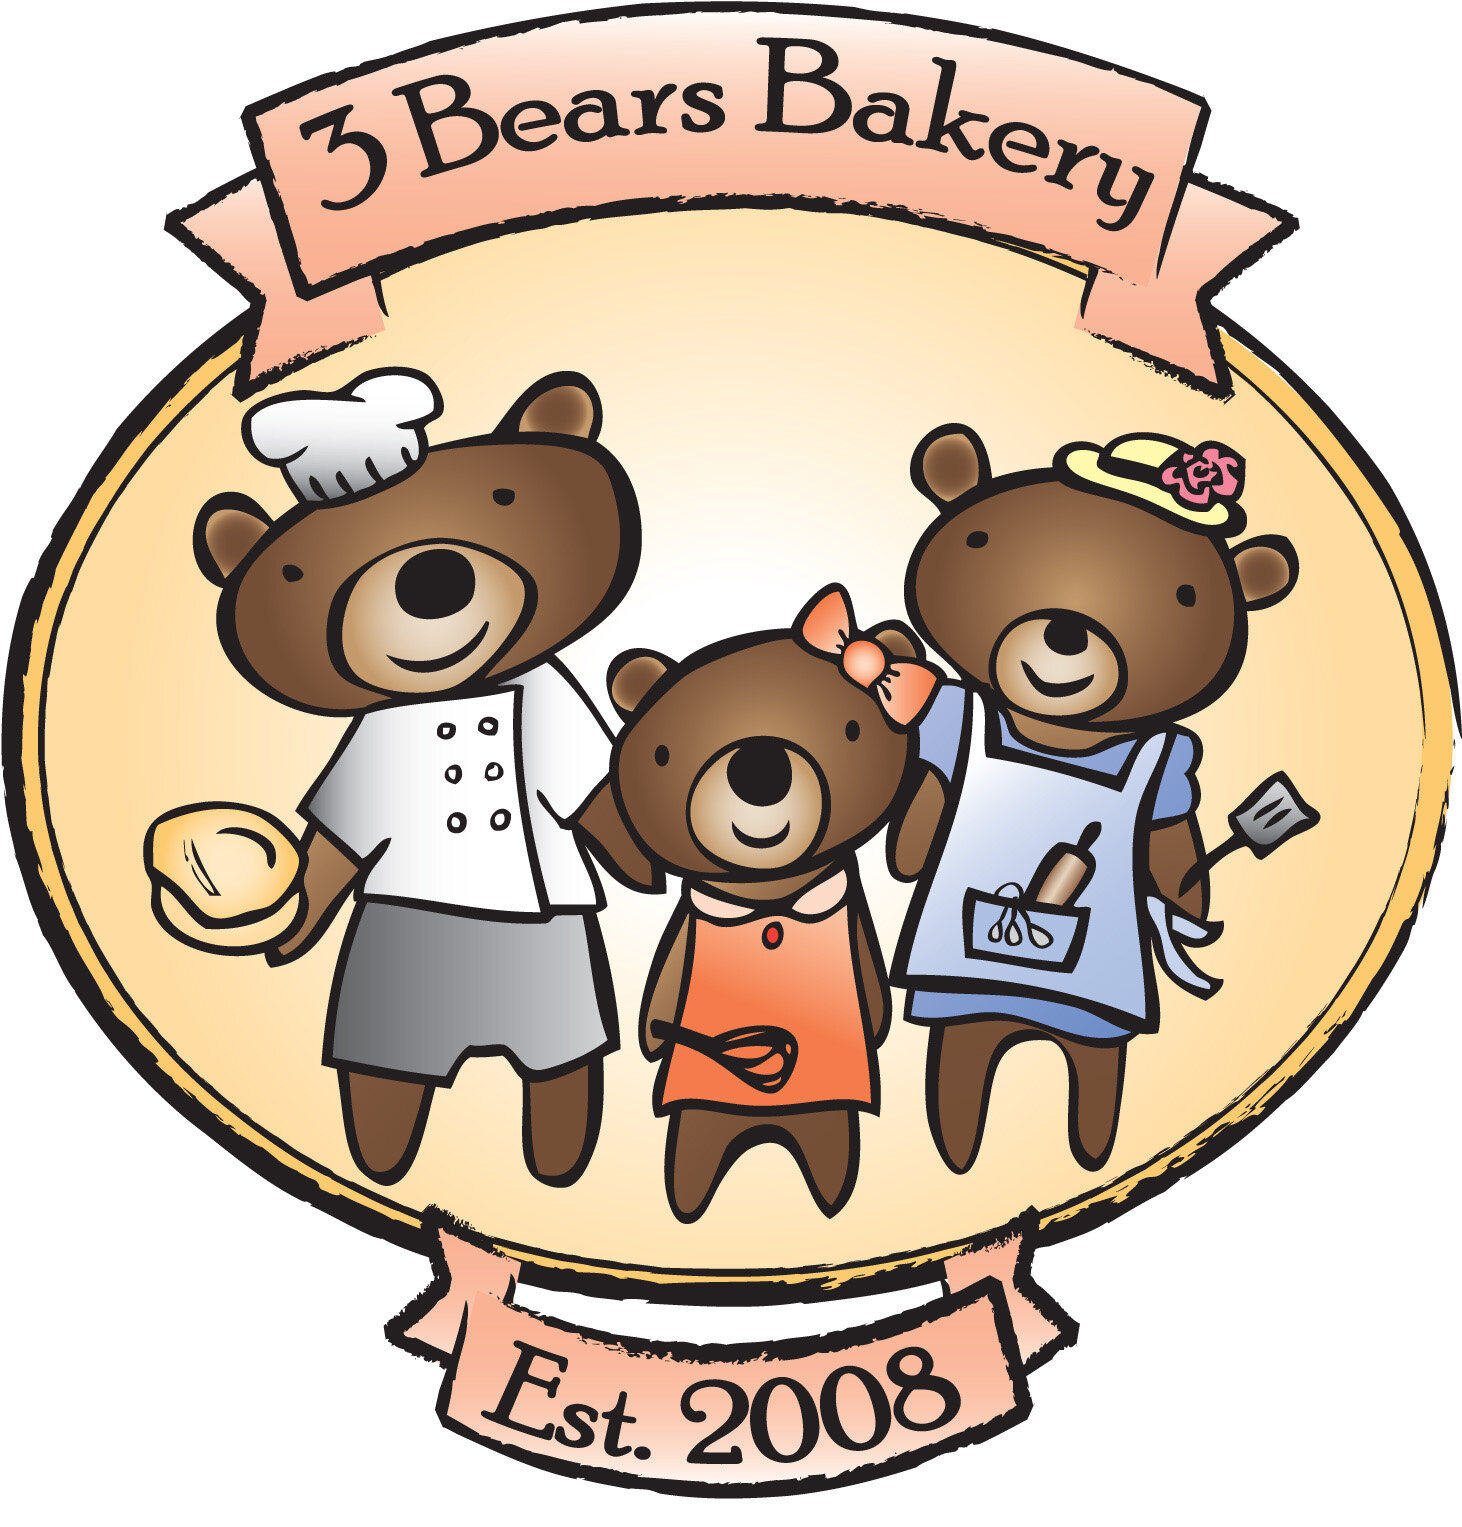 3 Bears Bakery